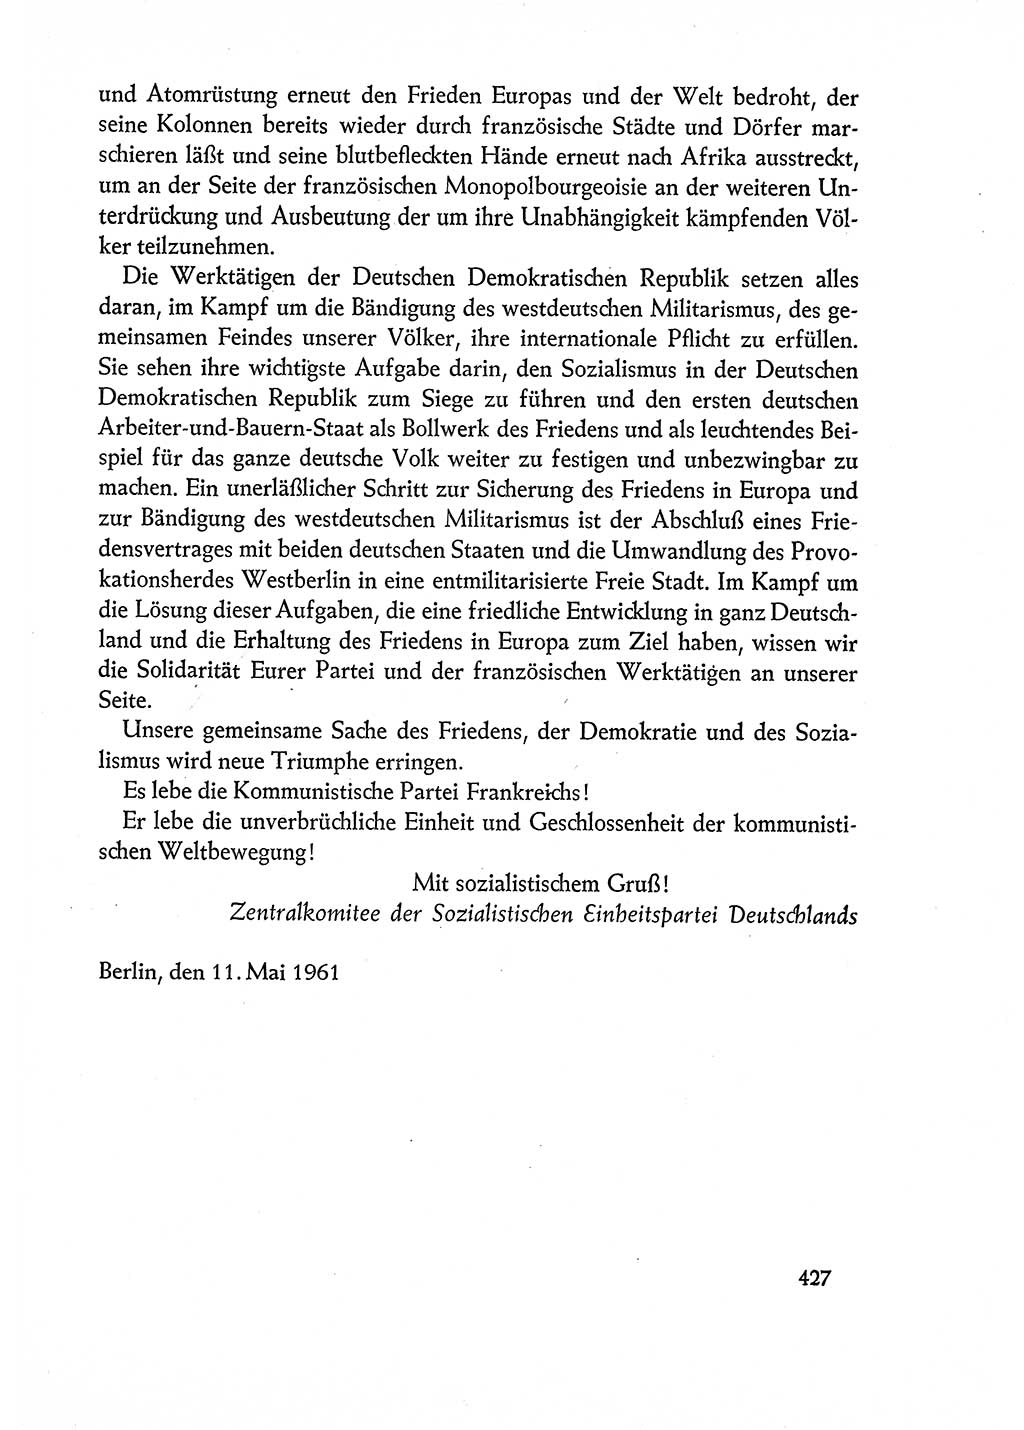 Dokumente der Sozialistischen Einheitspartei Deutschlands (SED) [Deutsche Demokratische Republik (DDR)] 1960-1961, Seite 427 (Dok. SED DDR 1960-1961, S. 427)